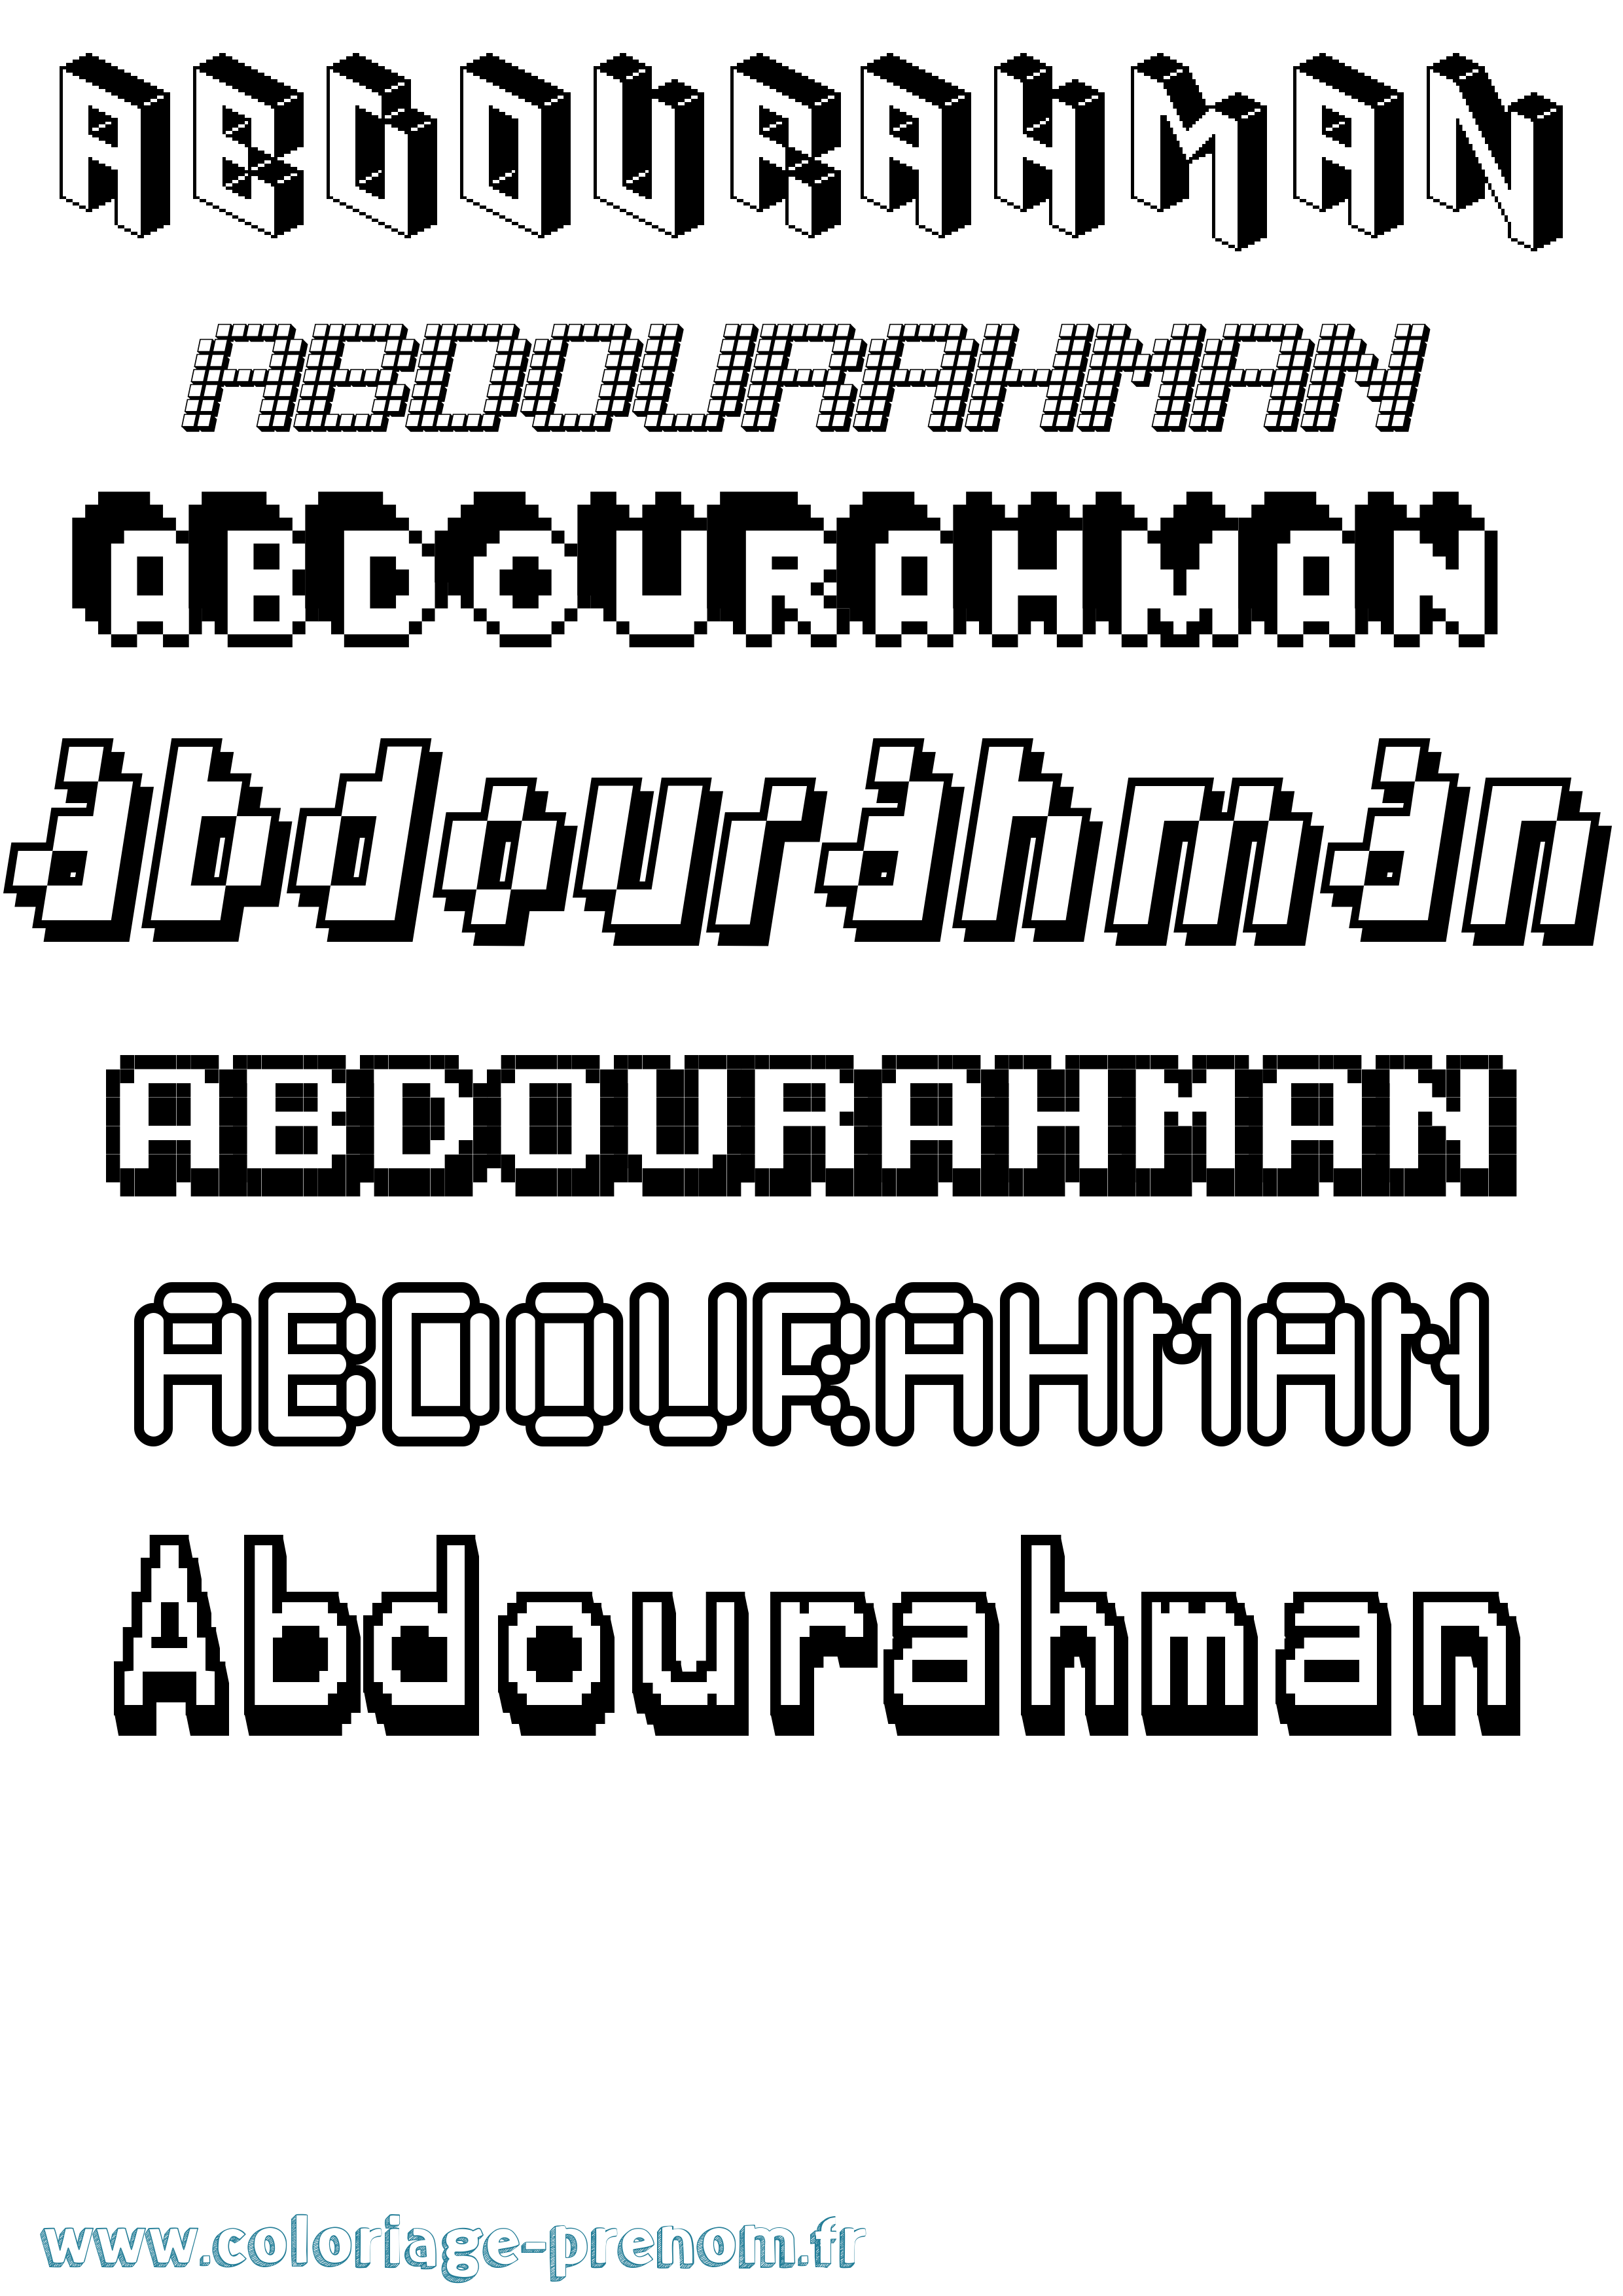 Coloriage prénom Abdourahman Pixel